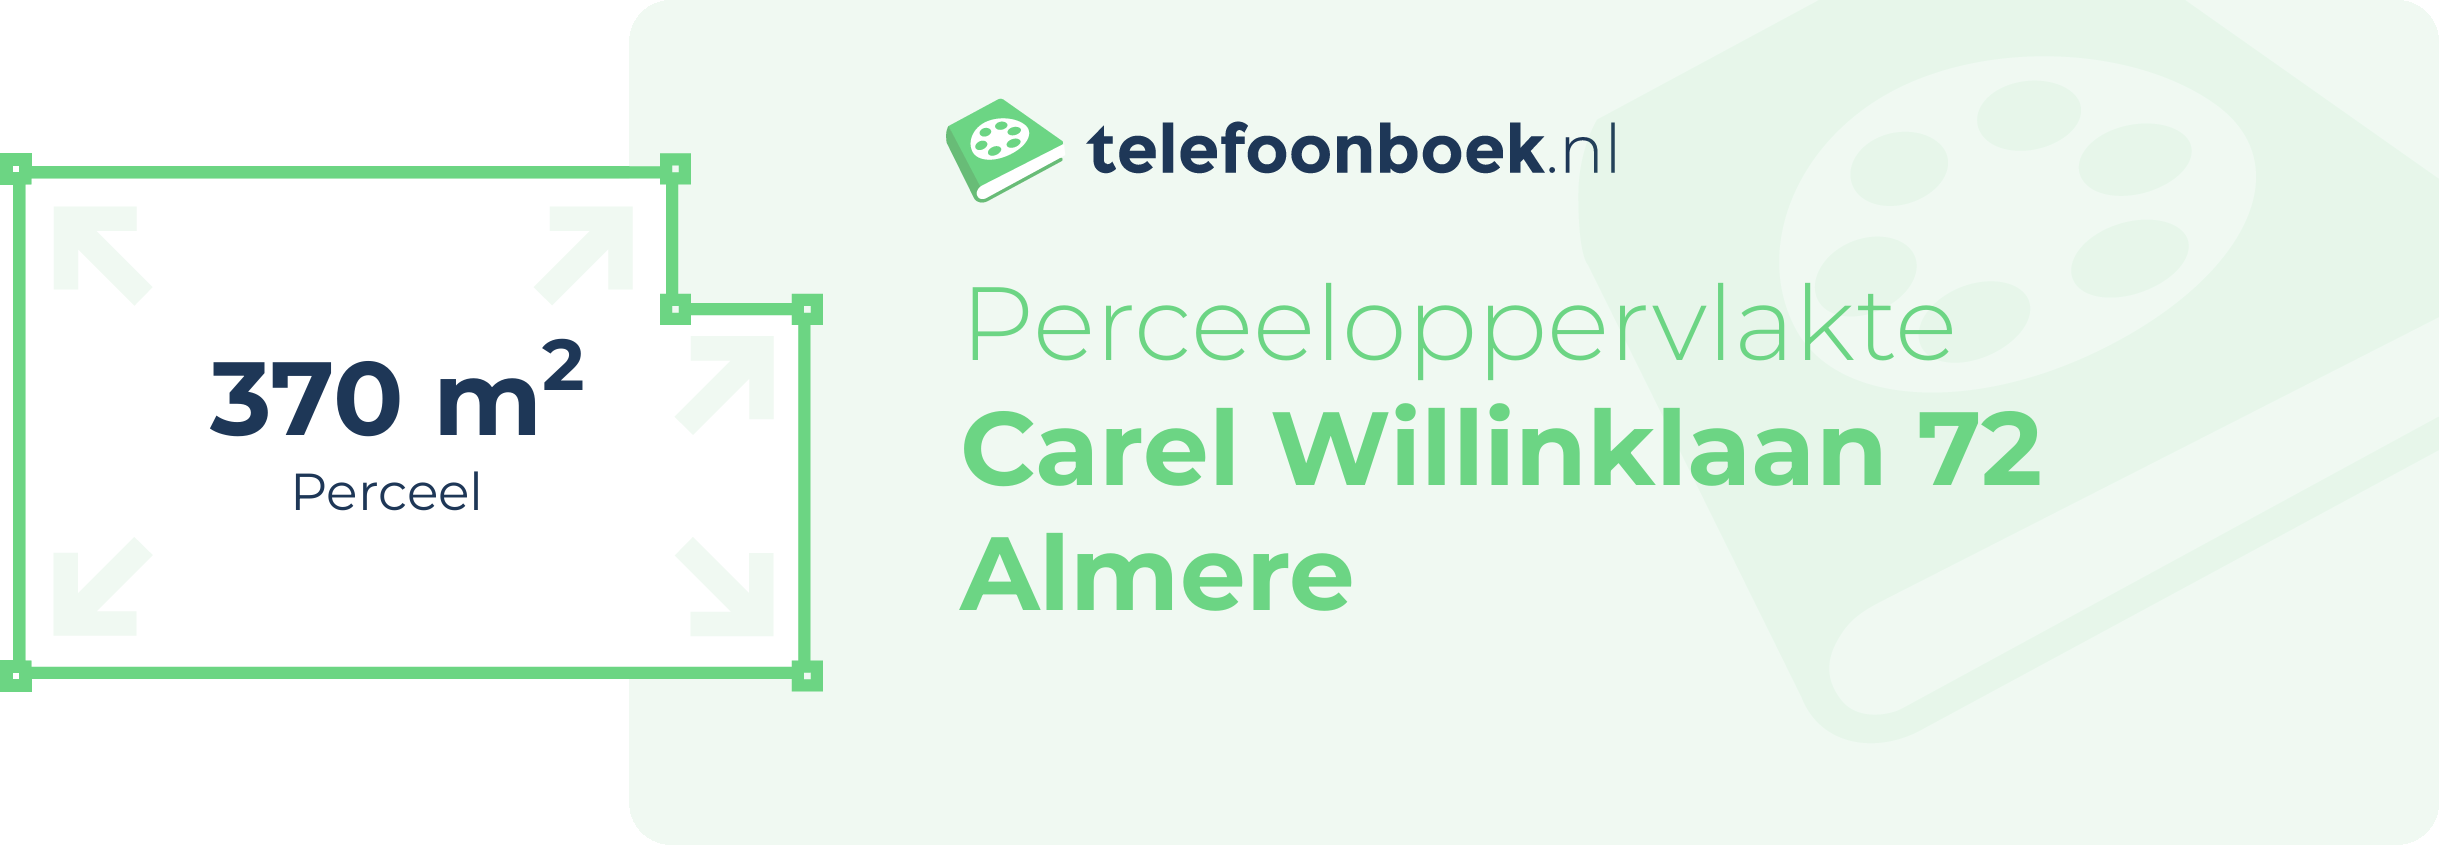 Perceeloppervlakte Carel Willinklaan 72 Almere